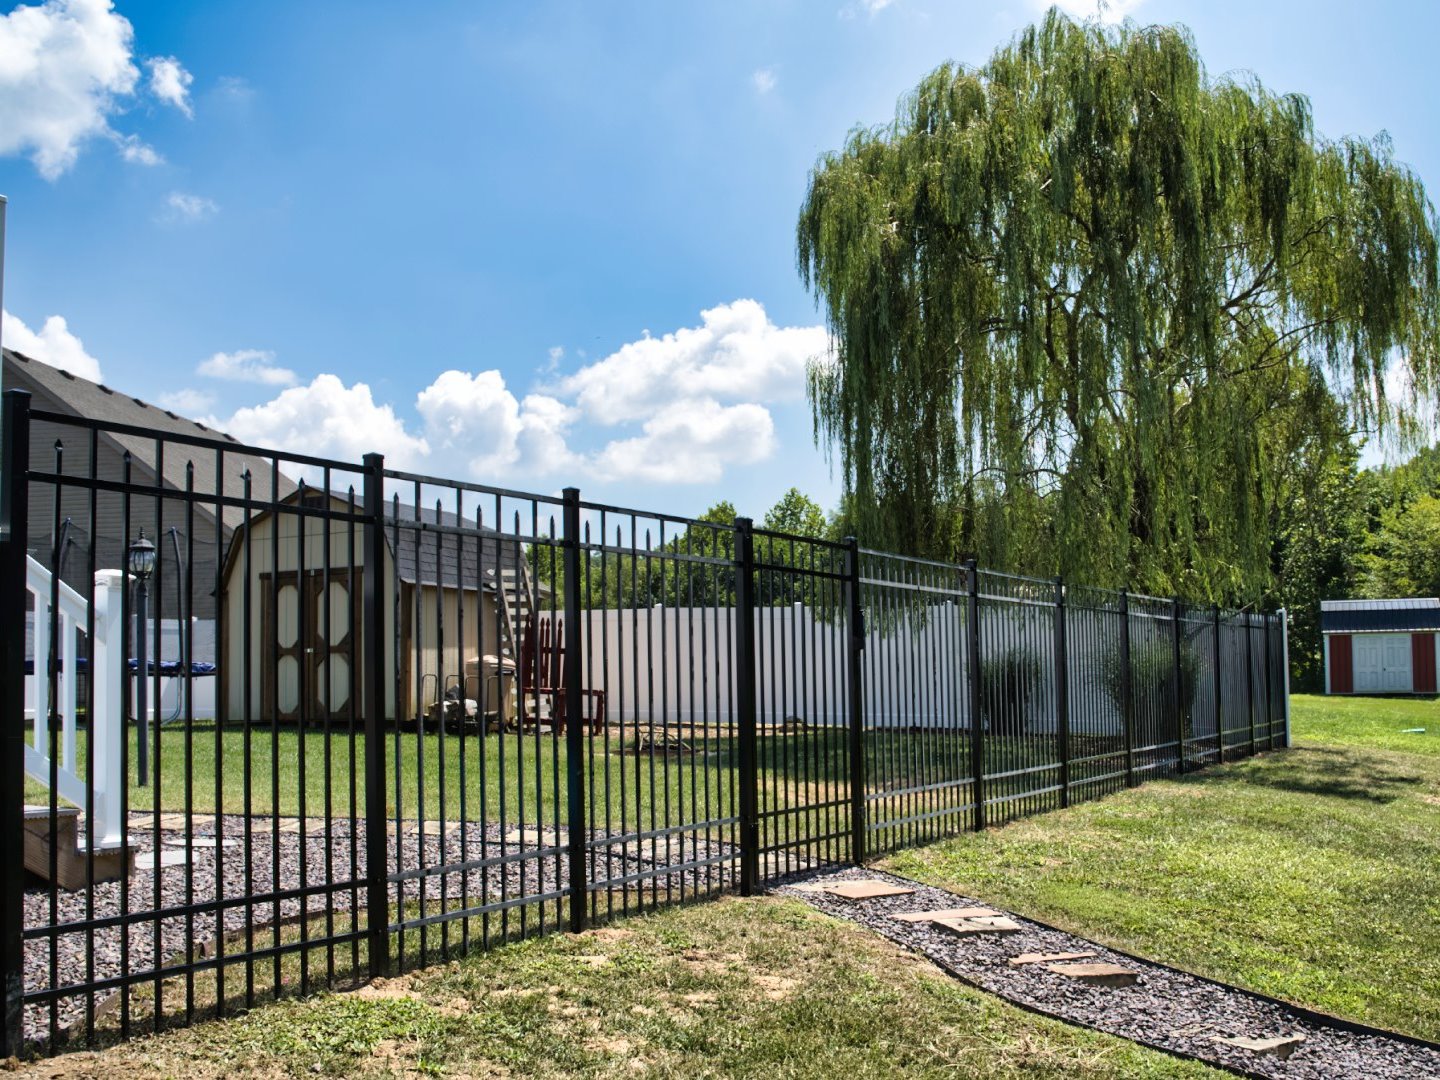 Kentucky fence company aluminum fence